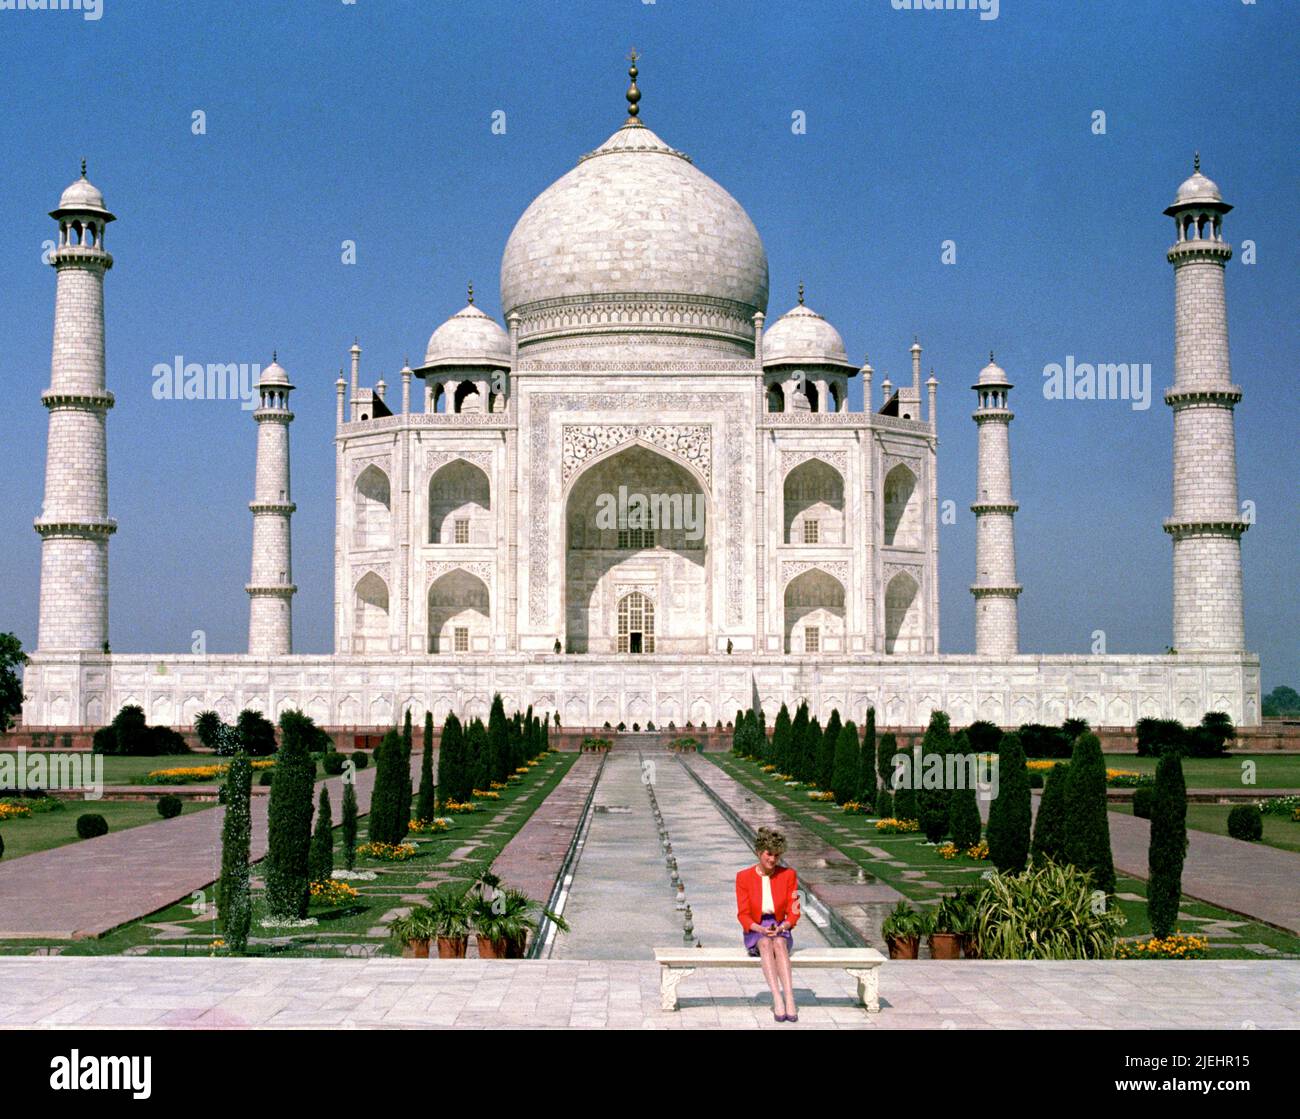 PA News Foto vom Februar 1992. Im Bild: Die Prinzessin von Wales vor dem Taj Mahal, während einer königlichen Tour durch Indien. PA Feature SHOWBIZ Film Reviews. Bildnachweis sollte lauten: PA Archive/PA Images/Martin Keene. Alle Rechte Vorbehalten. ACHTUNG: Dieses Bild darf nur zur Begleitung von PA Feature SHOWBIZ Film Reviews verwendet werden. Stockfoto